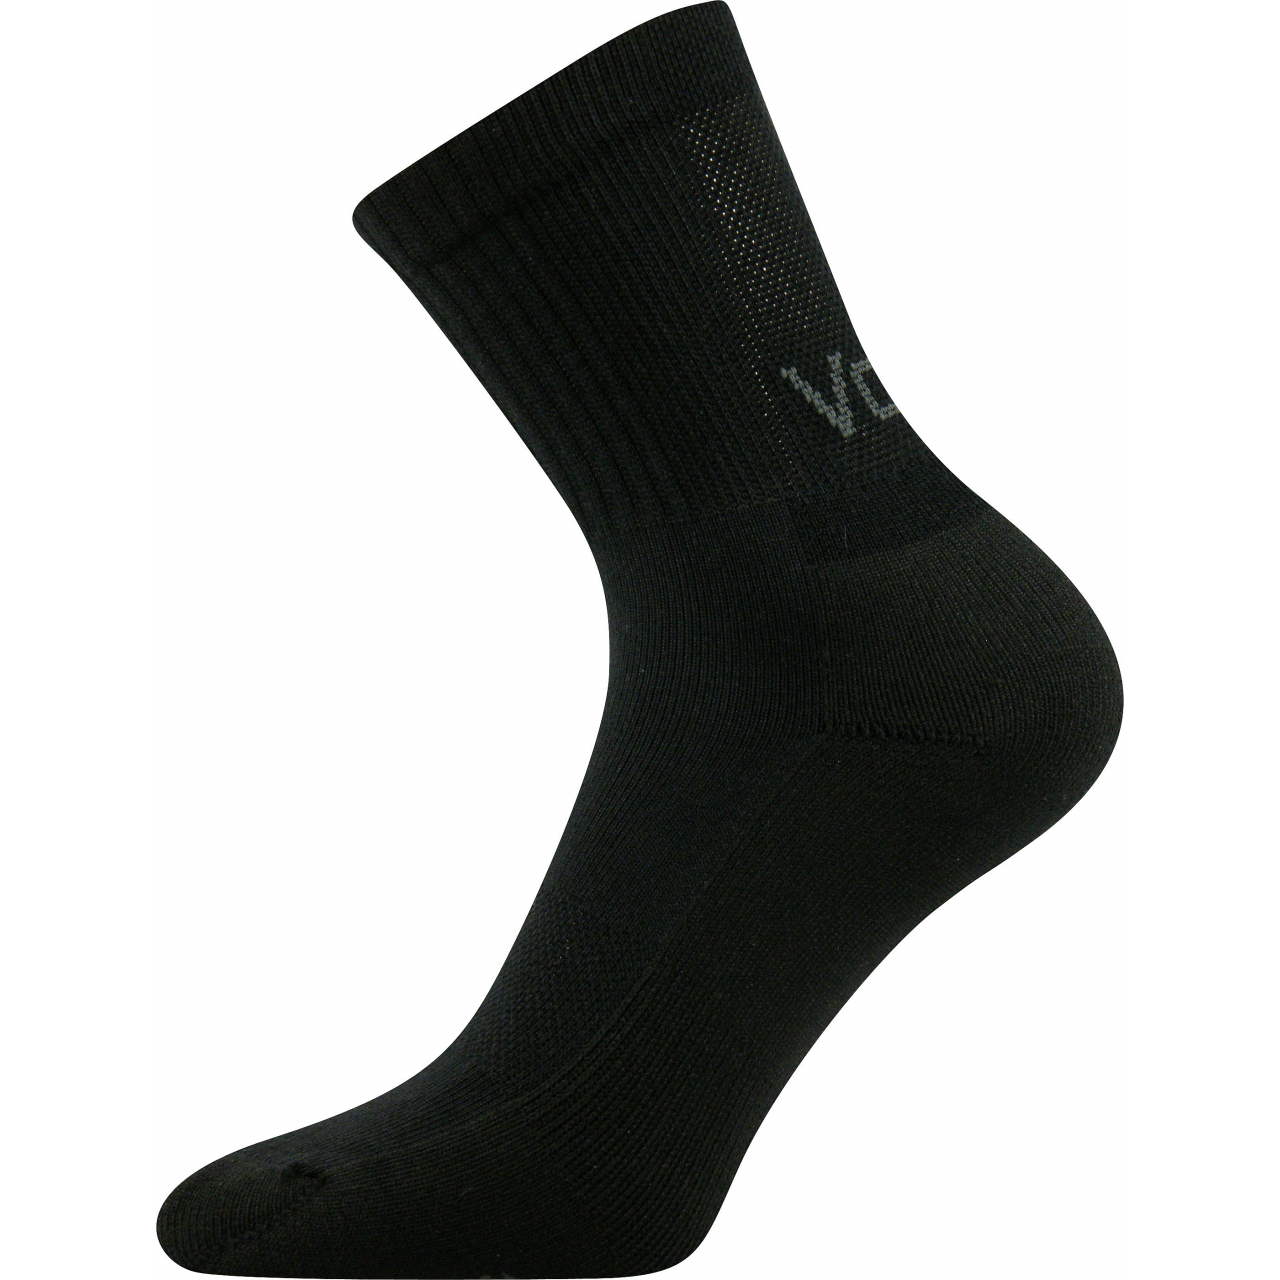 Ponožky sportovní unisex Voxx Mystic - černé, 43-46